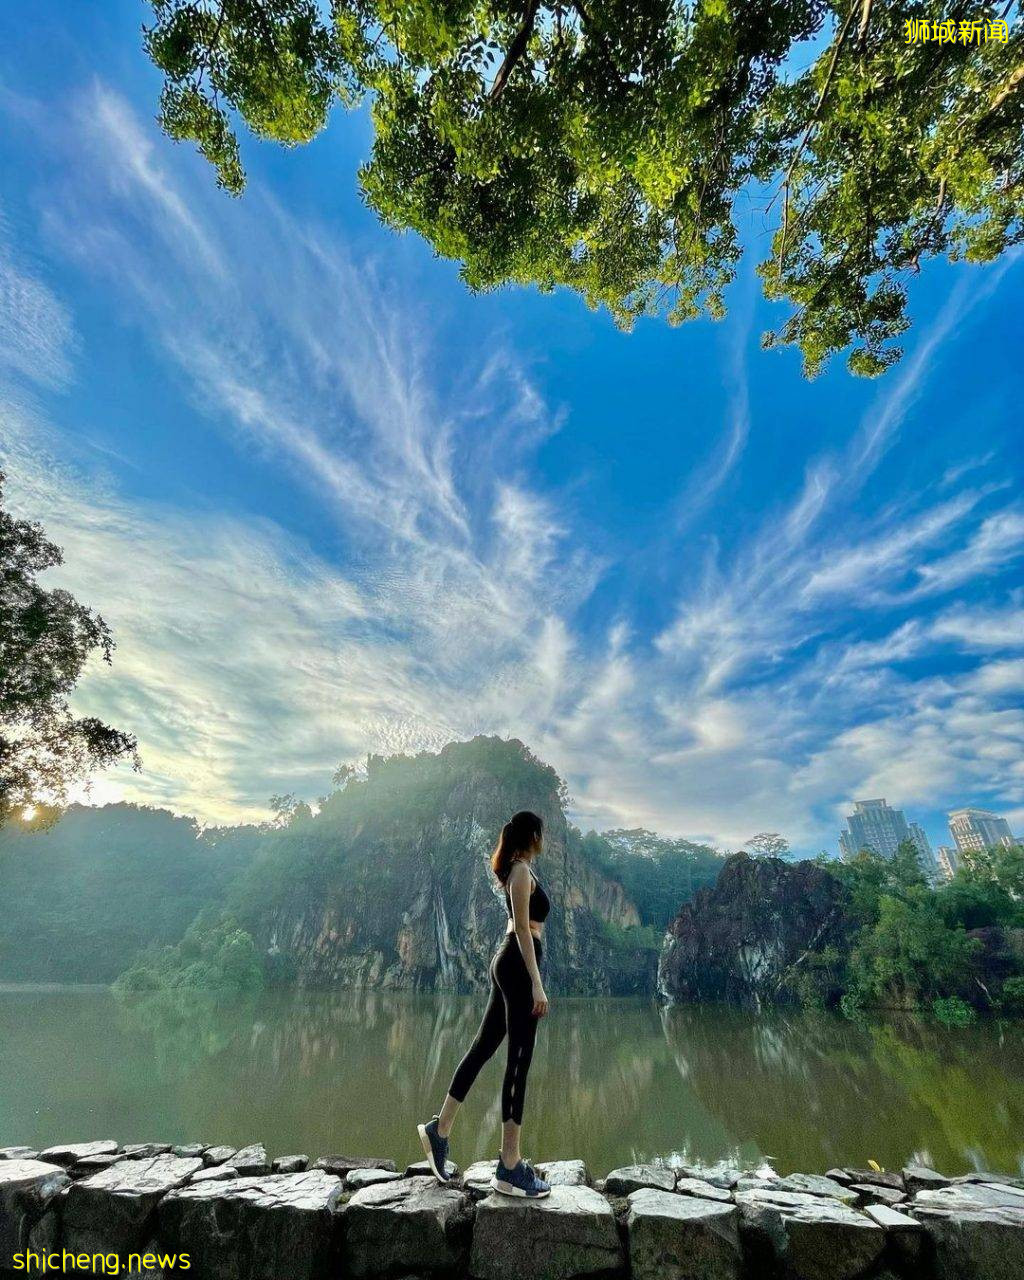 免費不用錢😍新加坡礦湖打卡✨風景如畫、美如仙境，到戶外走一圈後神清氣爽